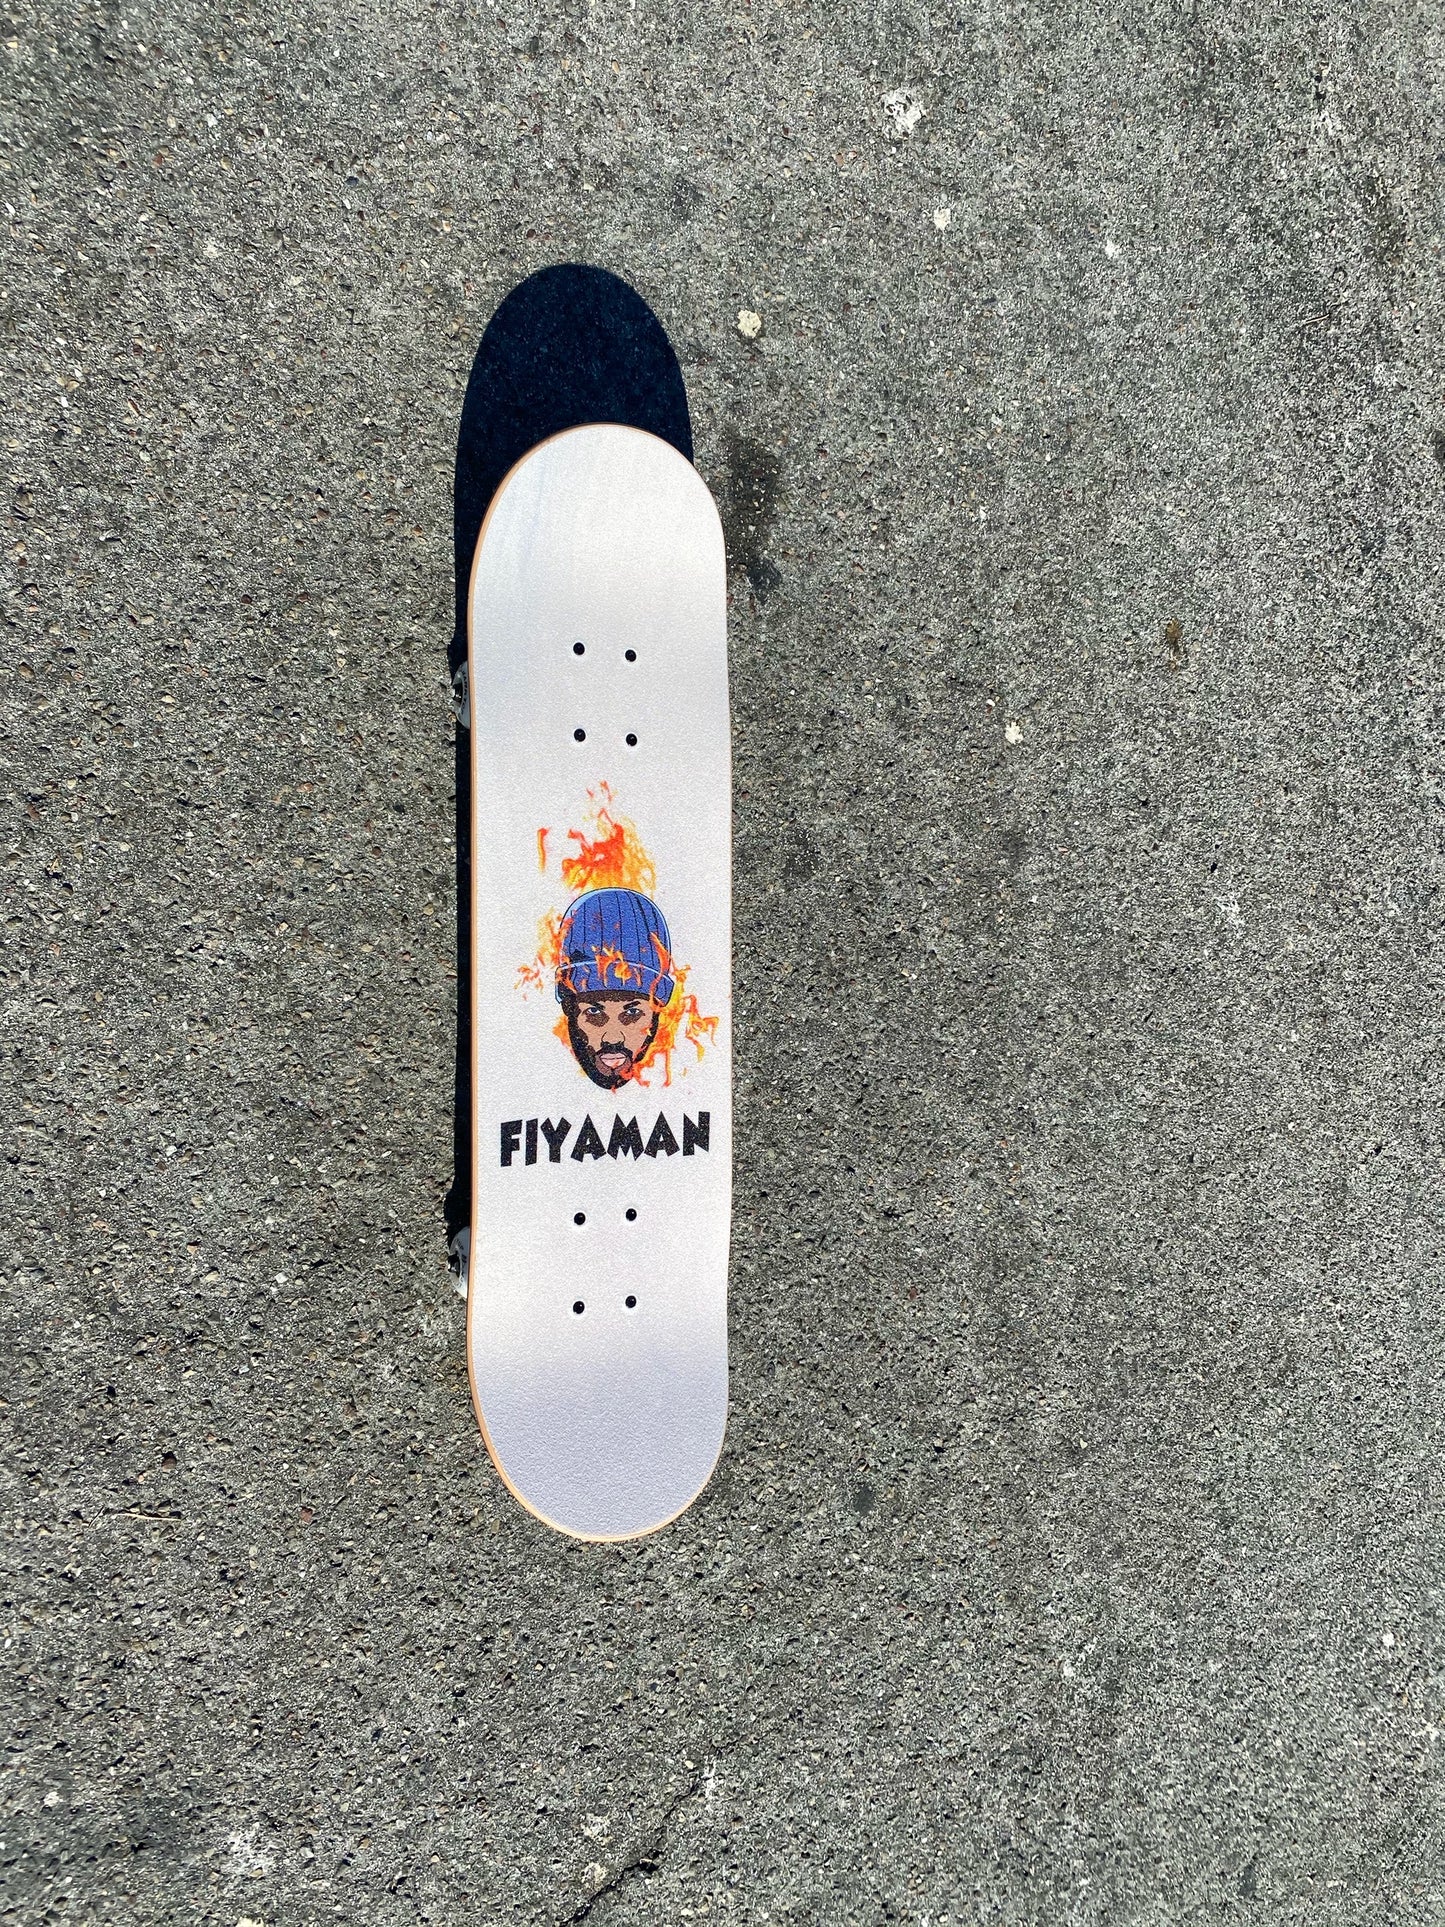 Fiyaman Skateboard